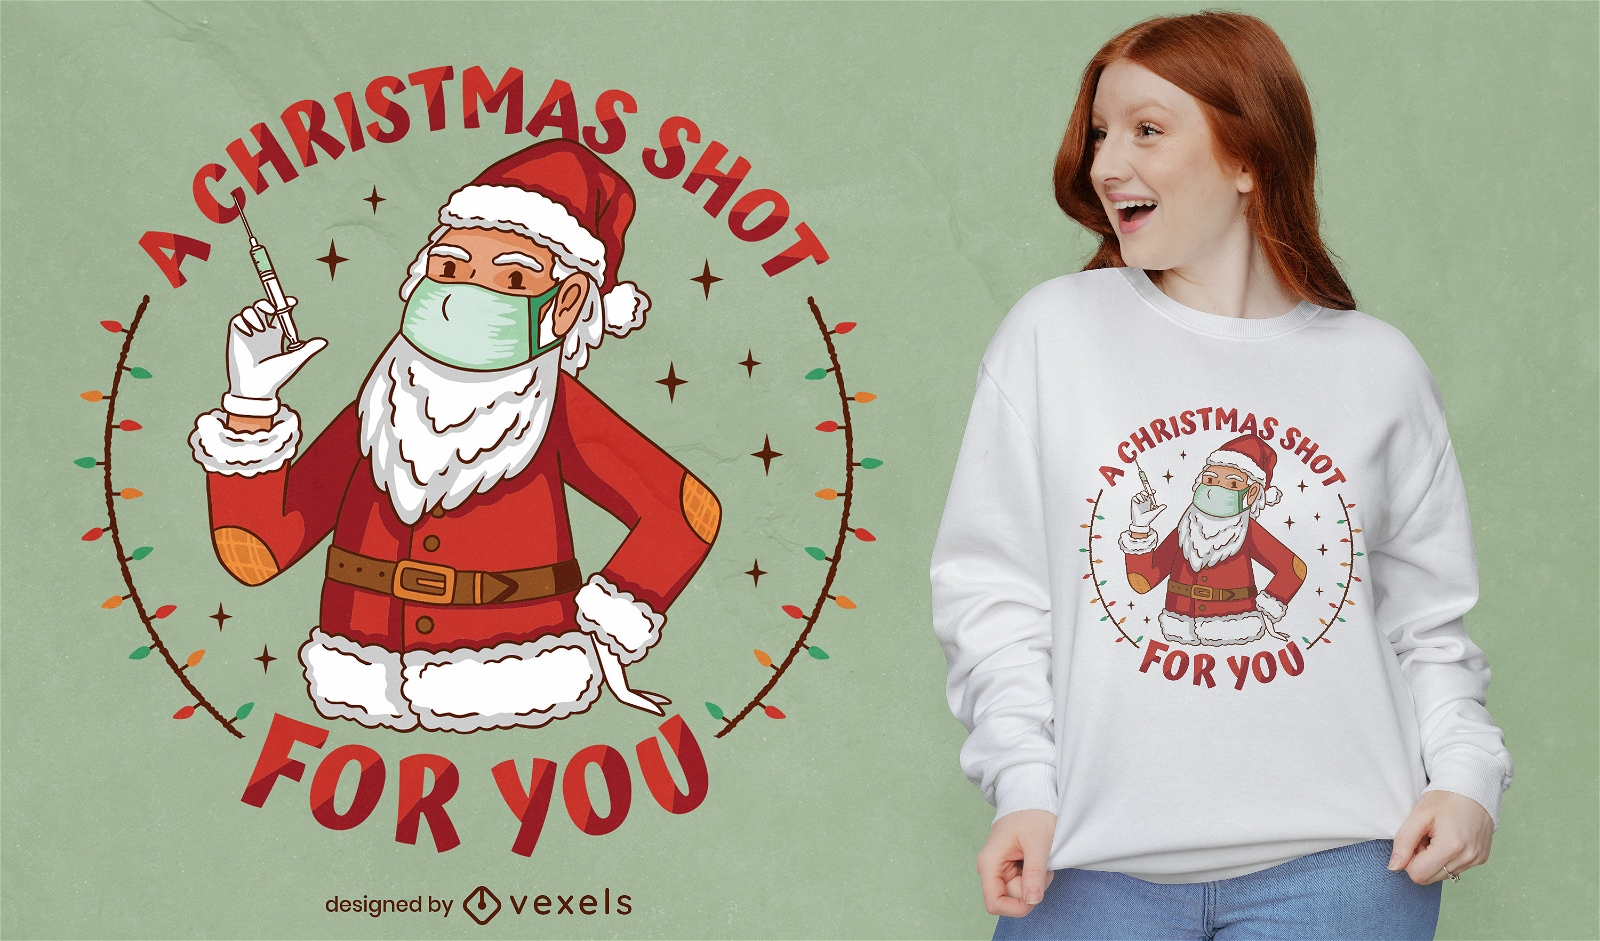 Diseño de camiseta navideña pro-vacuna.